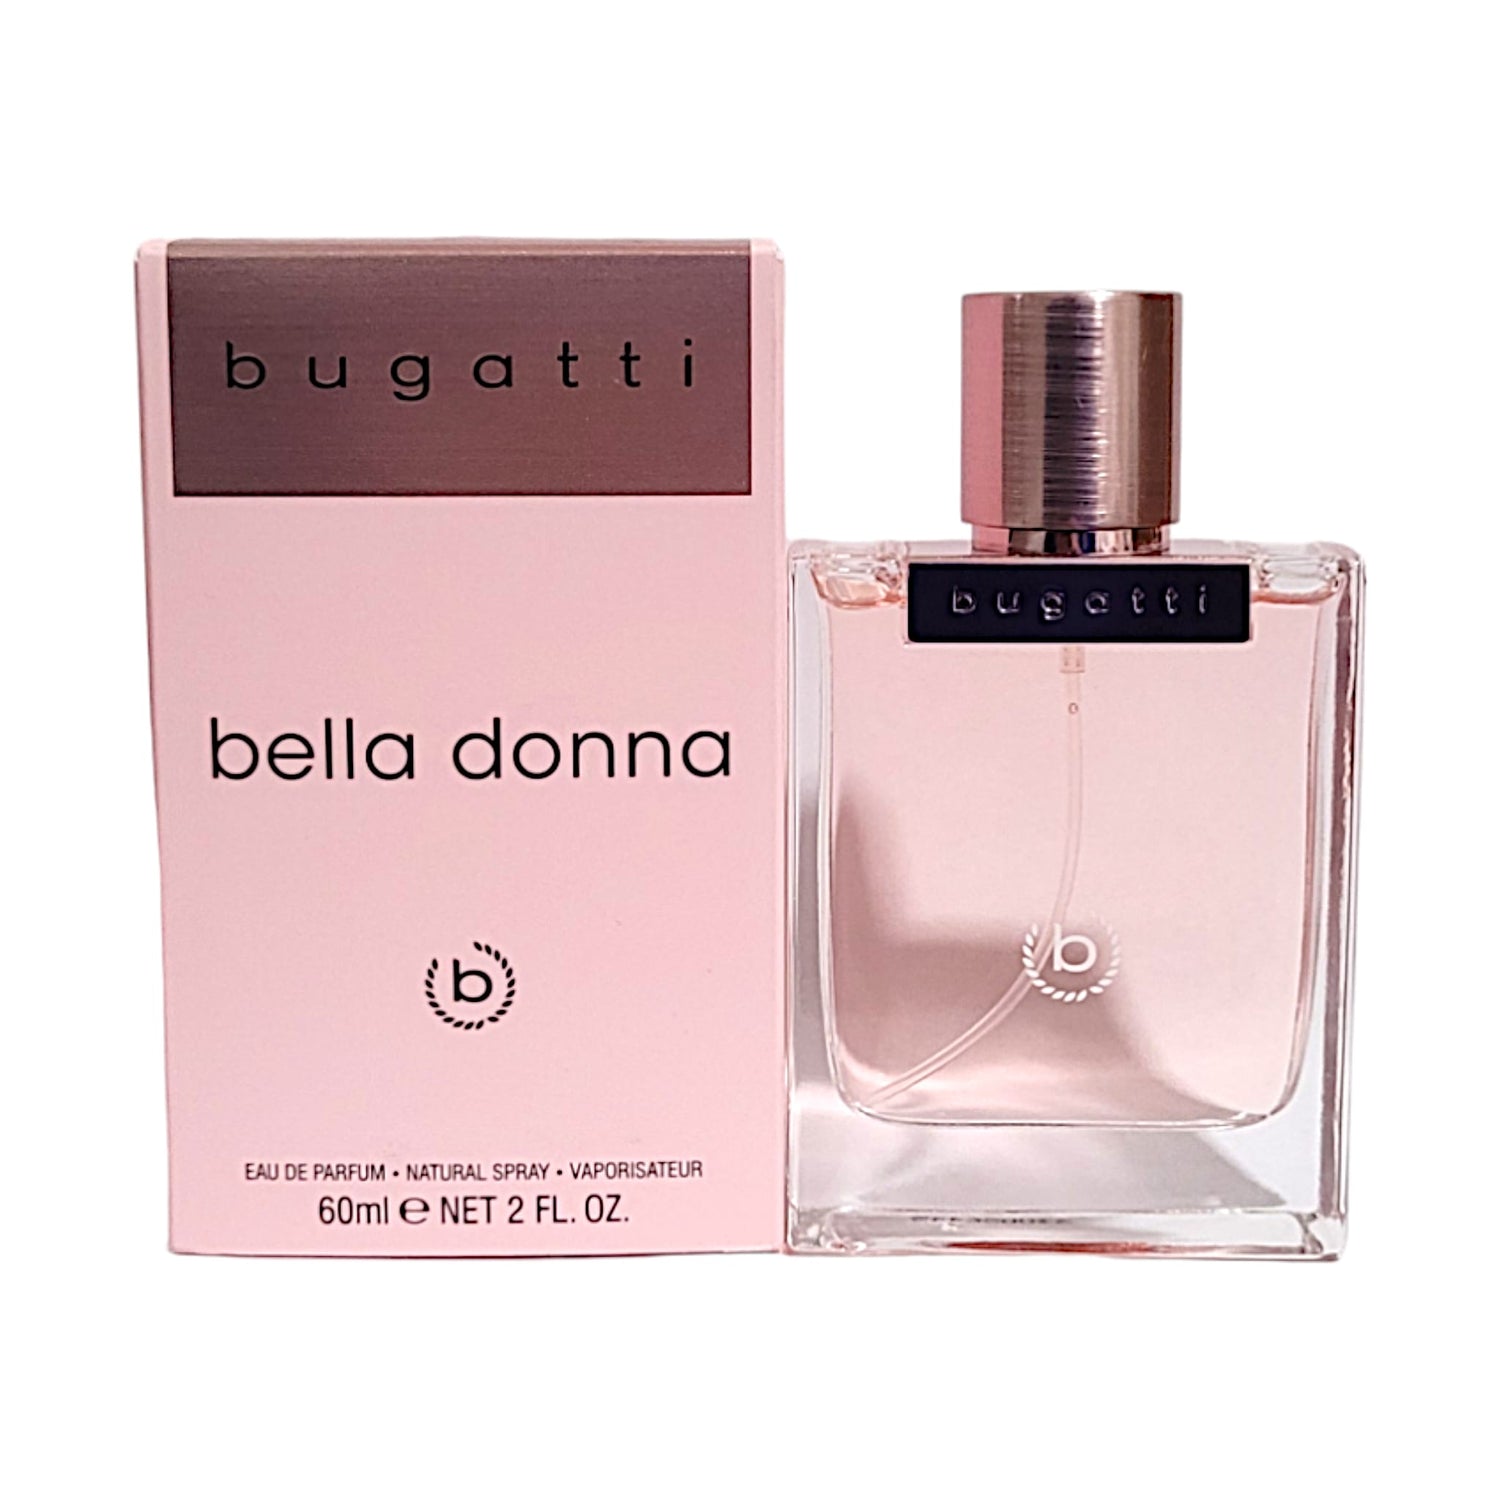 Bugatti Bella Donna Eau de Parfum 60 ml – Da Meso